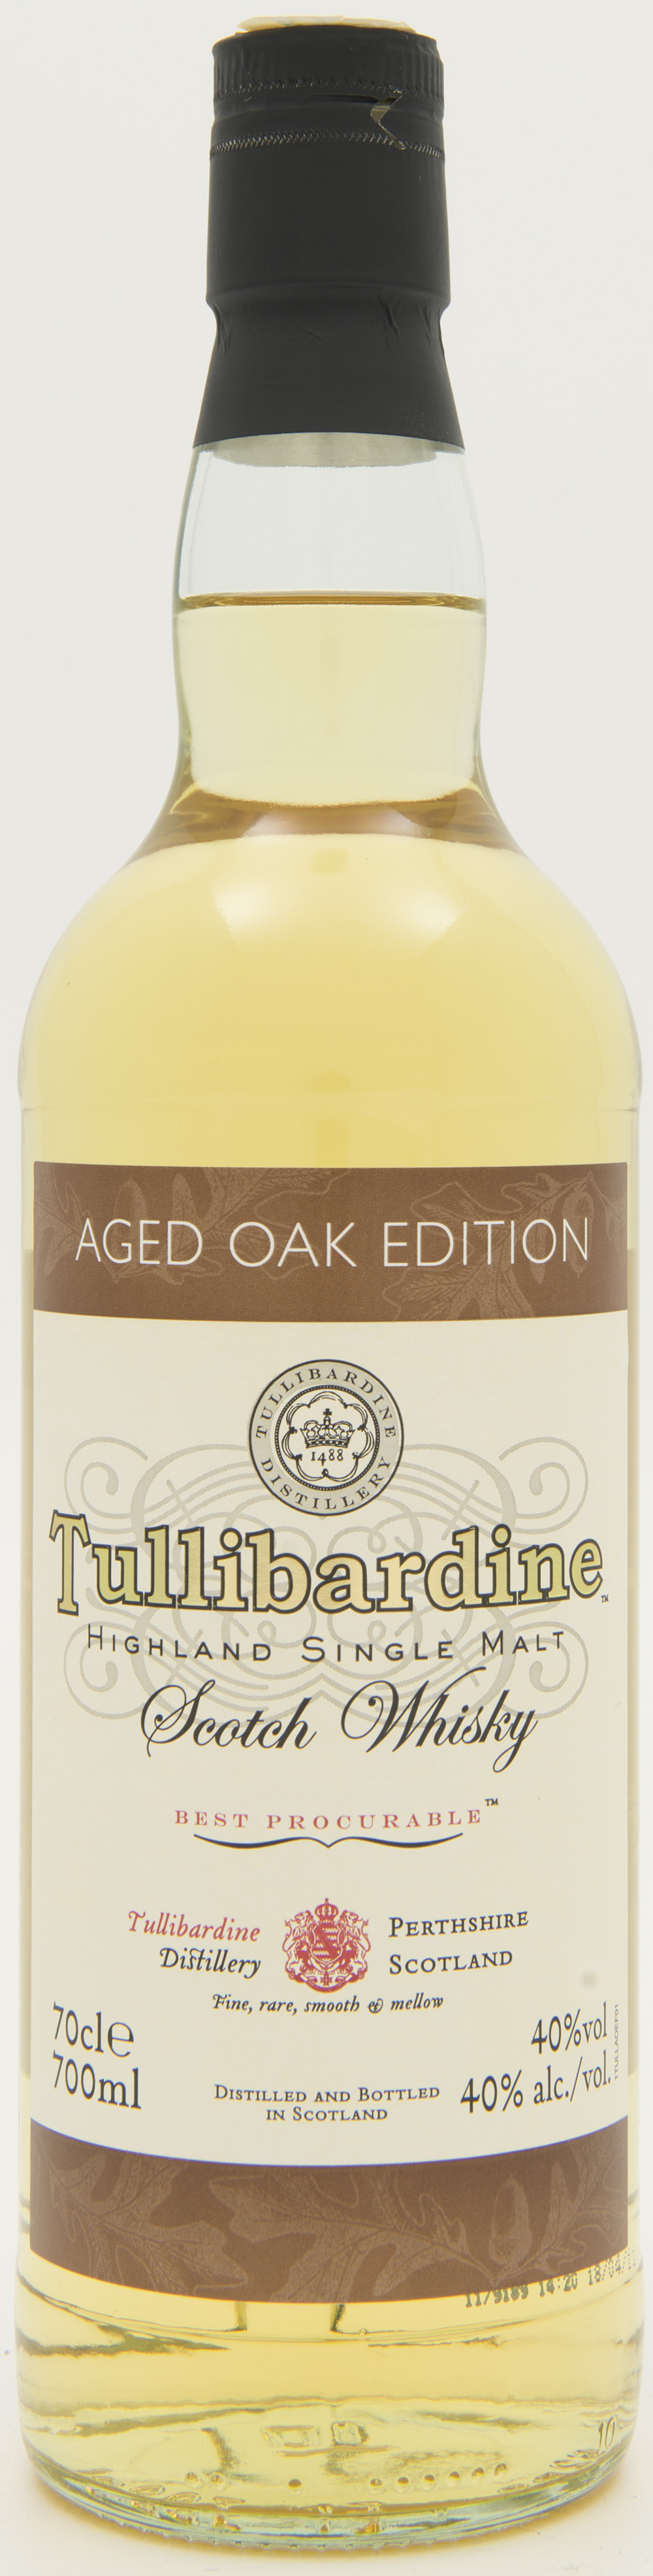 Billede: DSC_3735 Tullibardine Aged Oak Edition - bottle front.jpg